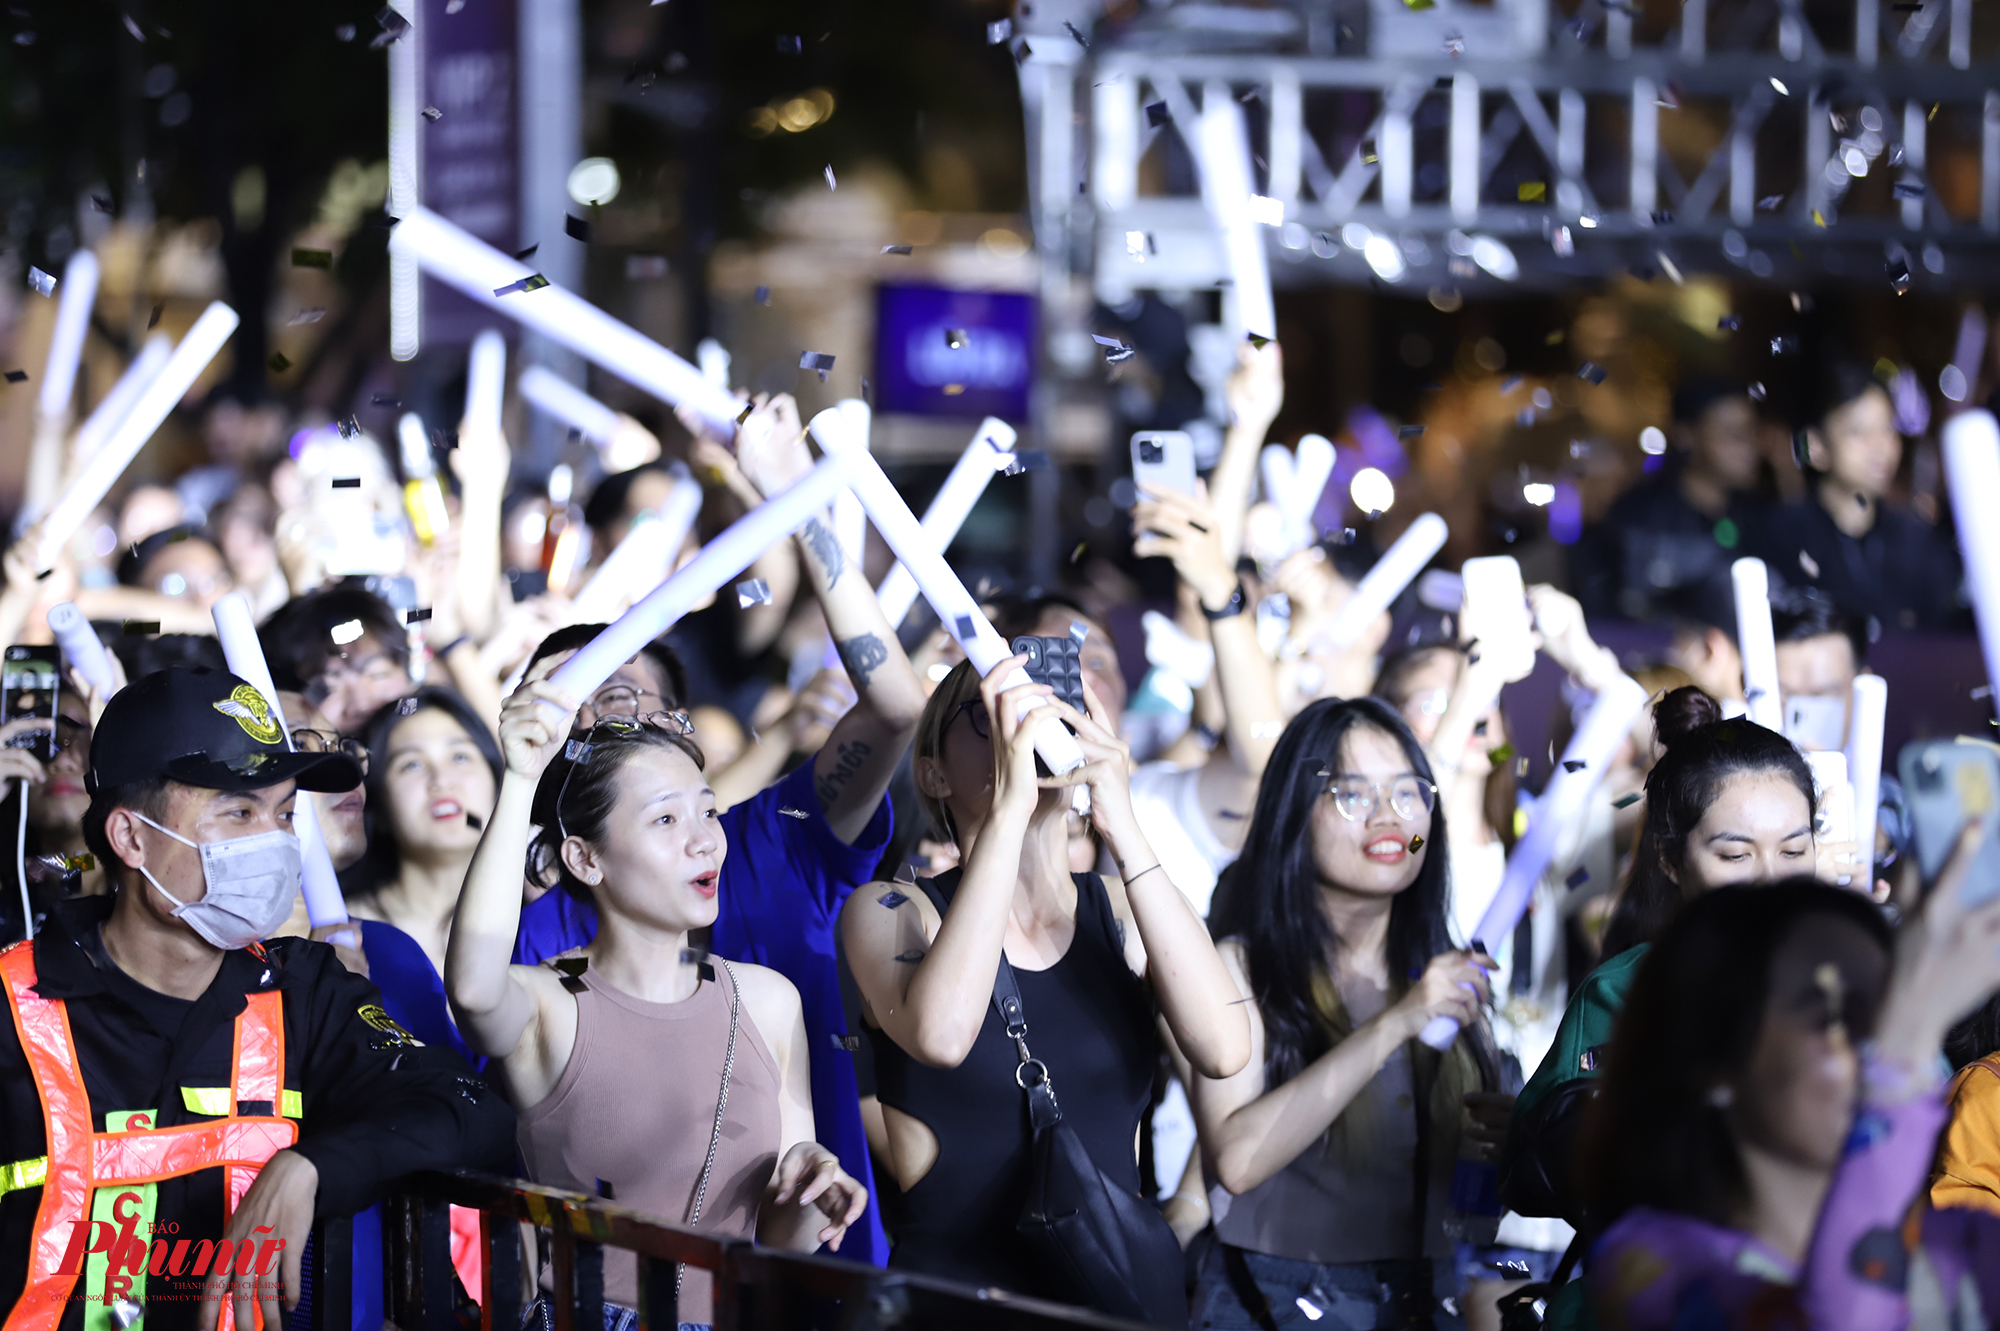 Nhiều khán giả nhún nhảy, hò hét theo từng phần trình diễn của CL. Nhiều người hô tên của nữ ca sĩ rất to dưới sân khấu. Sự tham gia của nữ ca sĩ là một trong những lý do khiến đêm diễn này thu hút hàng chục ngàn khán gỉa.